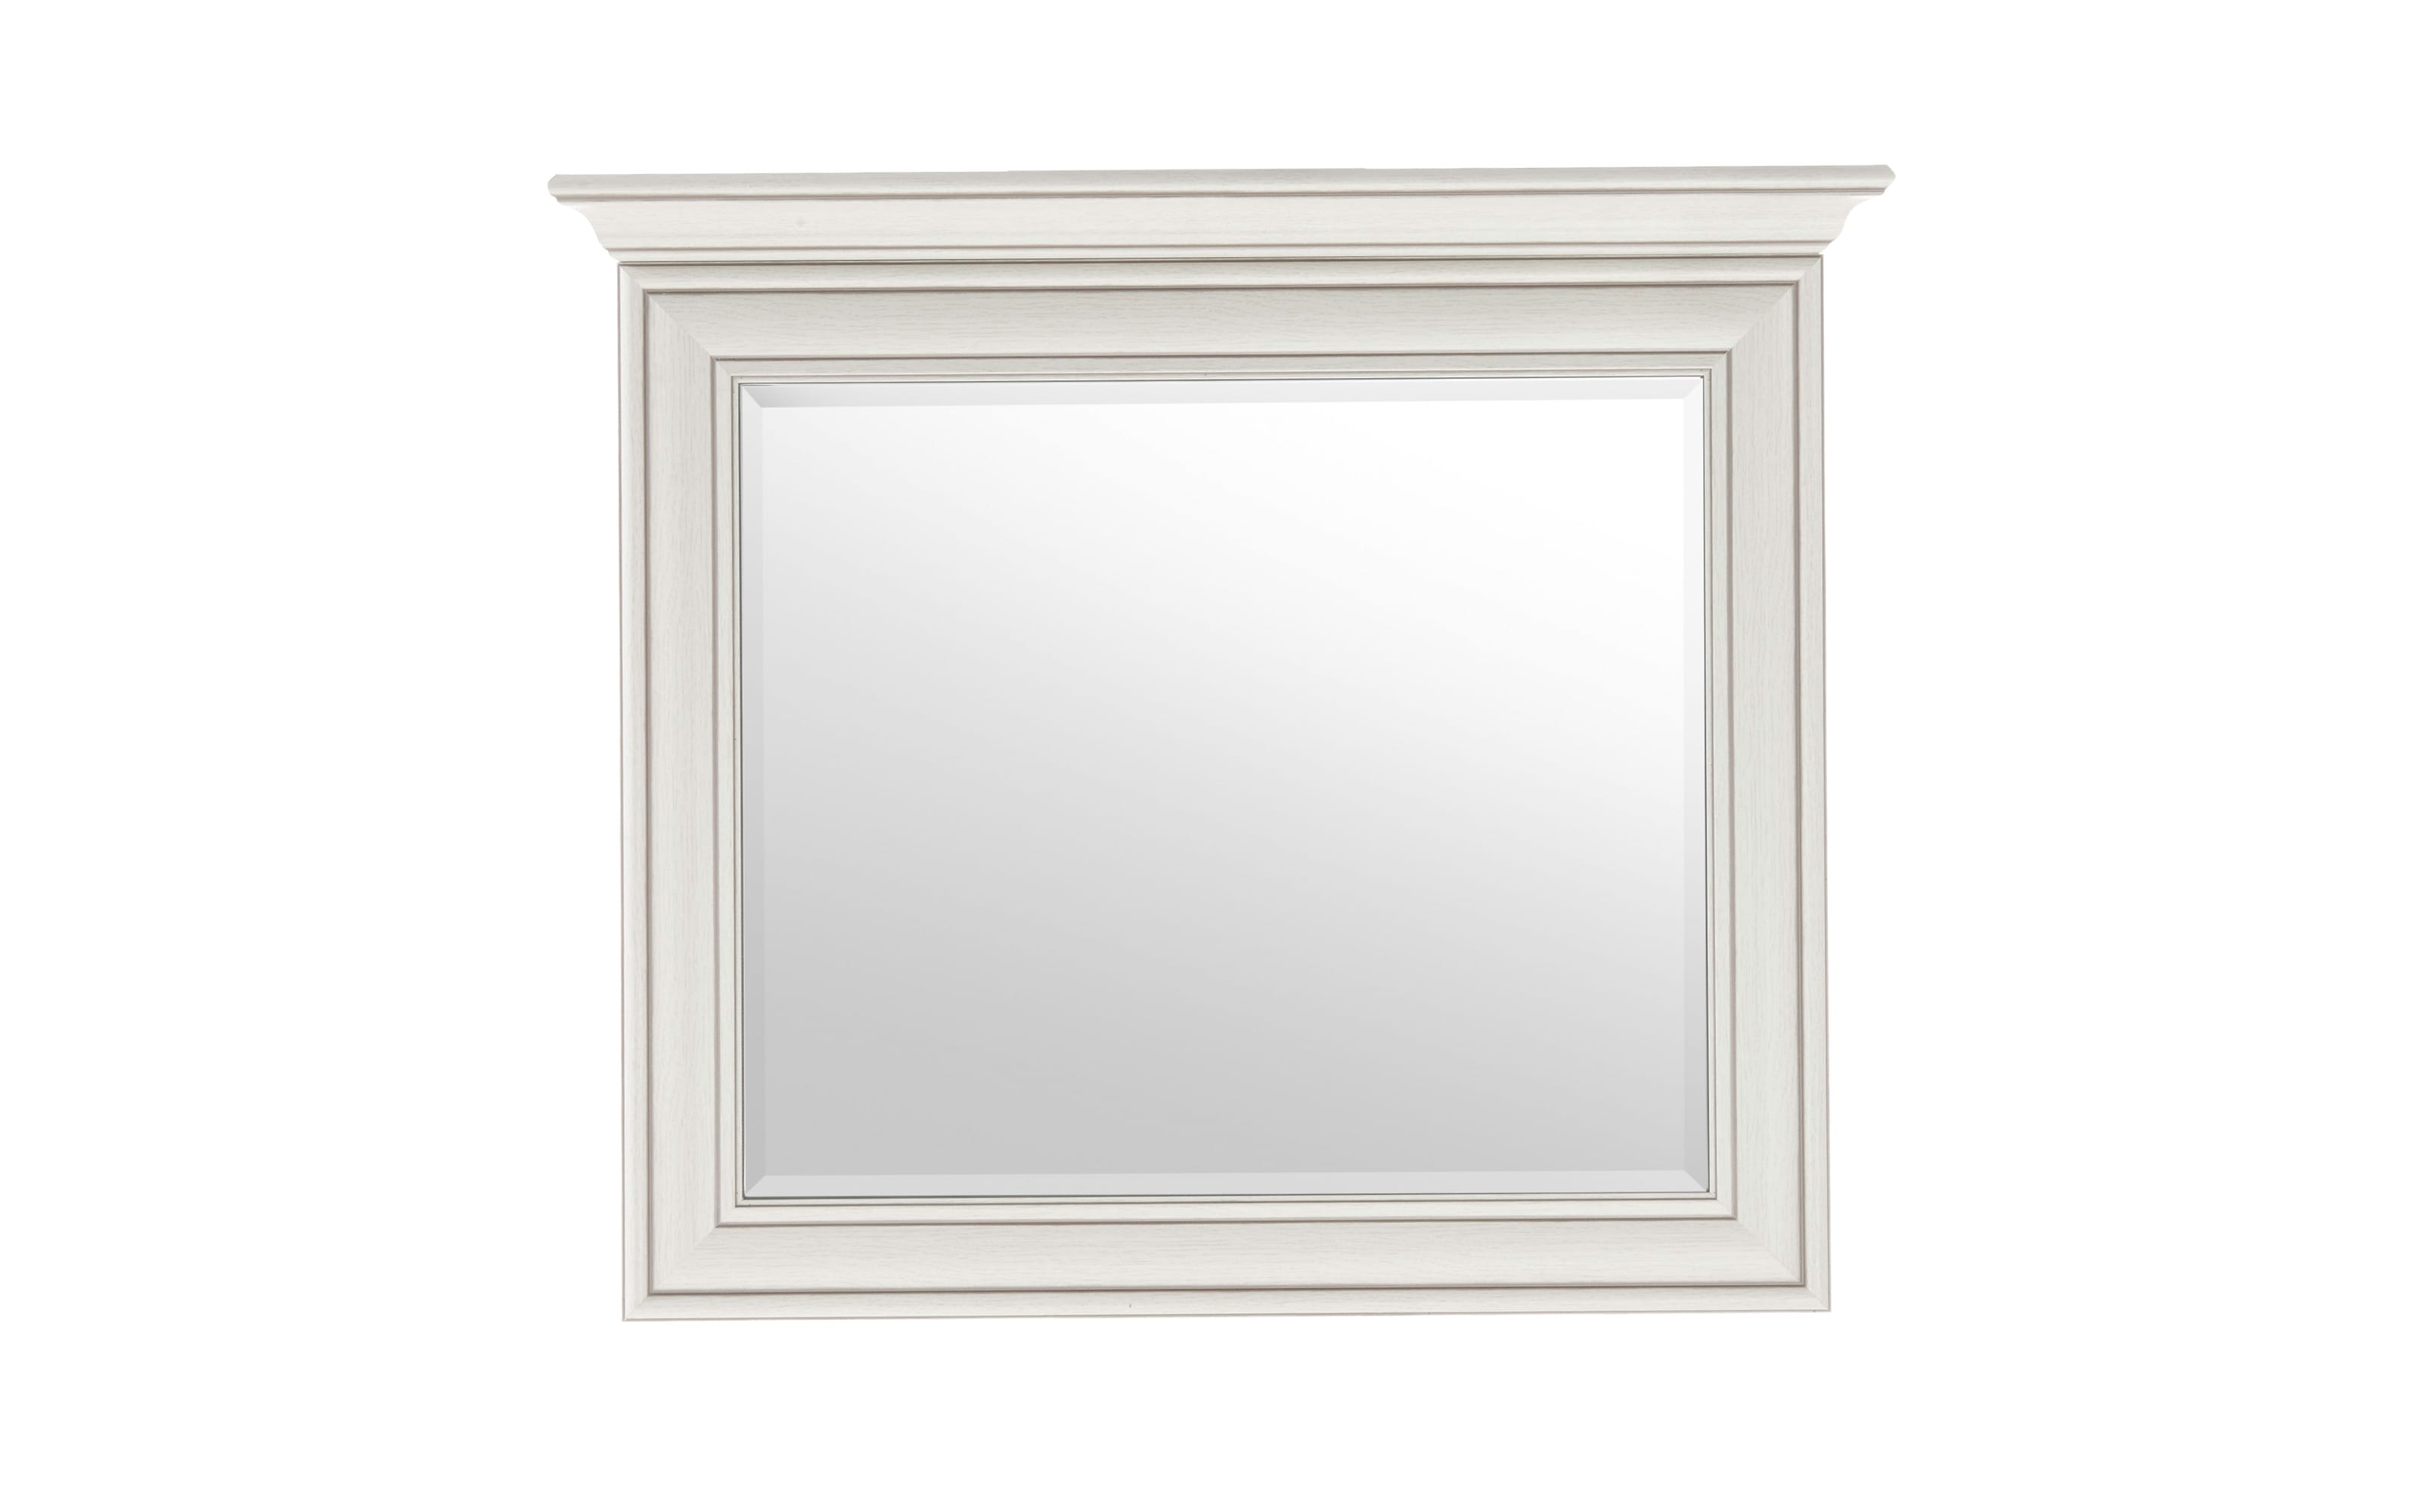 Spiegel Venedig in used white, 88 x 76 cm